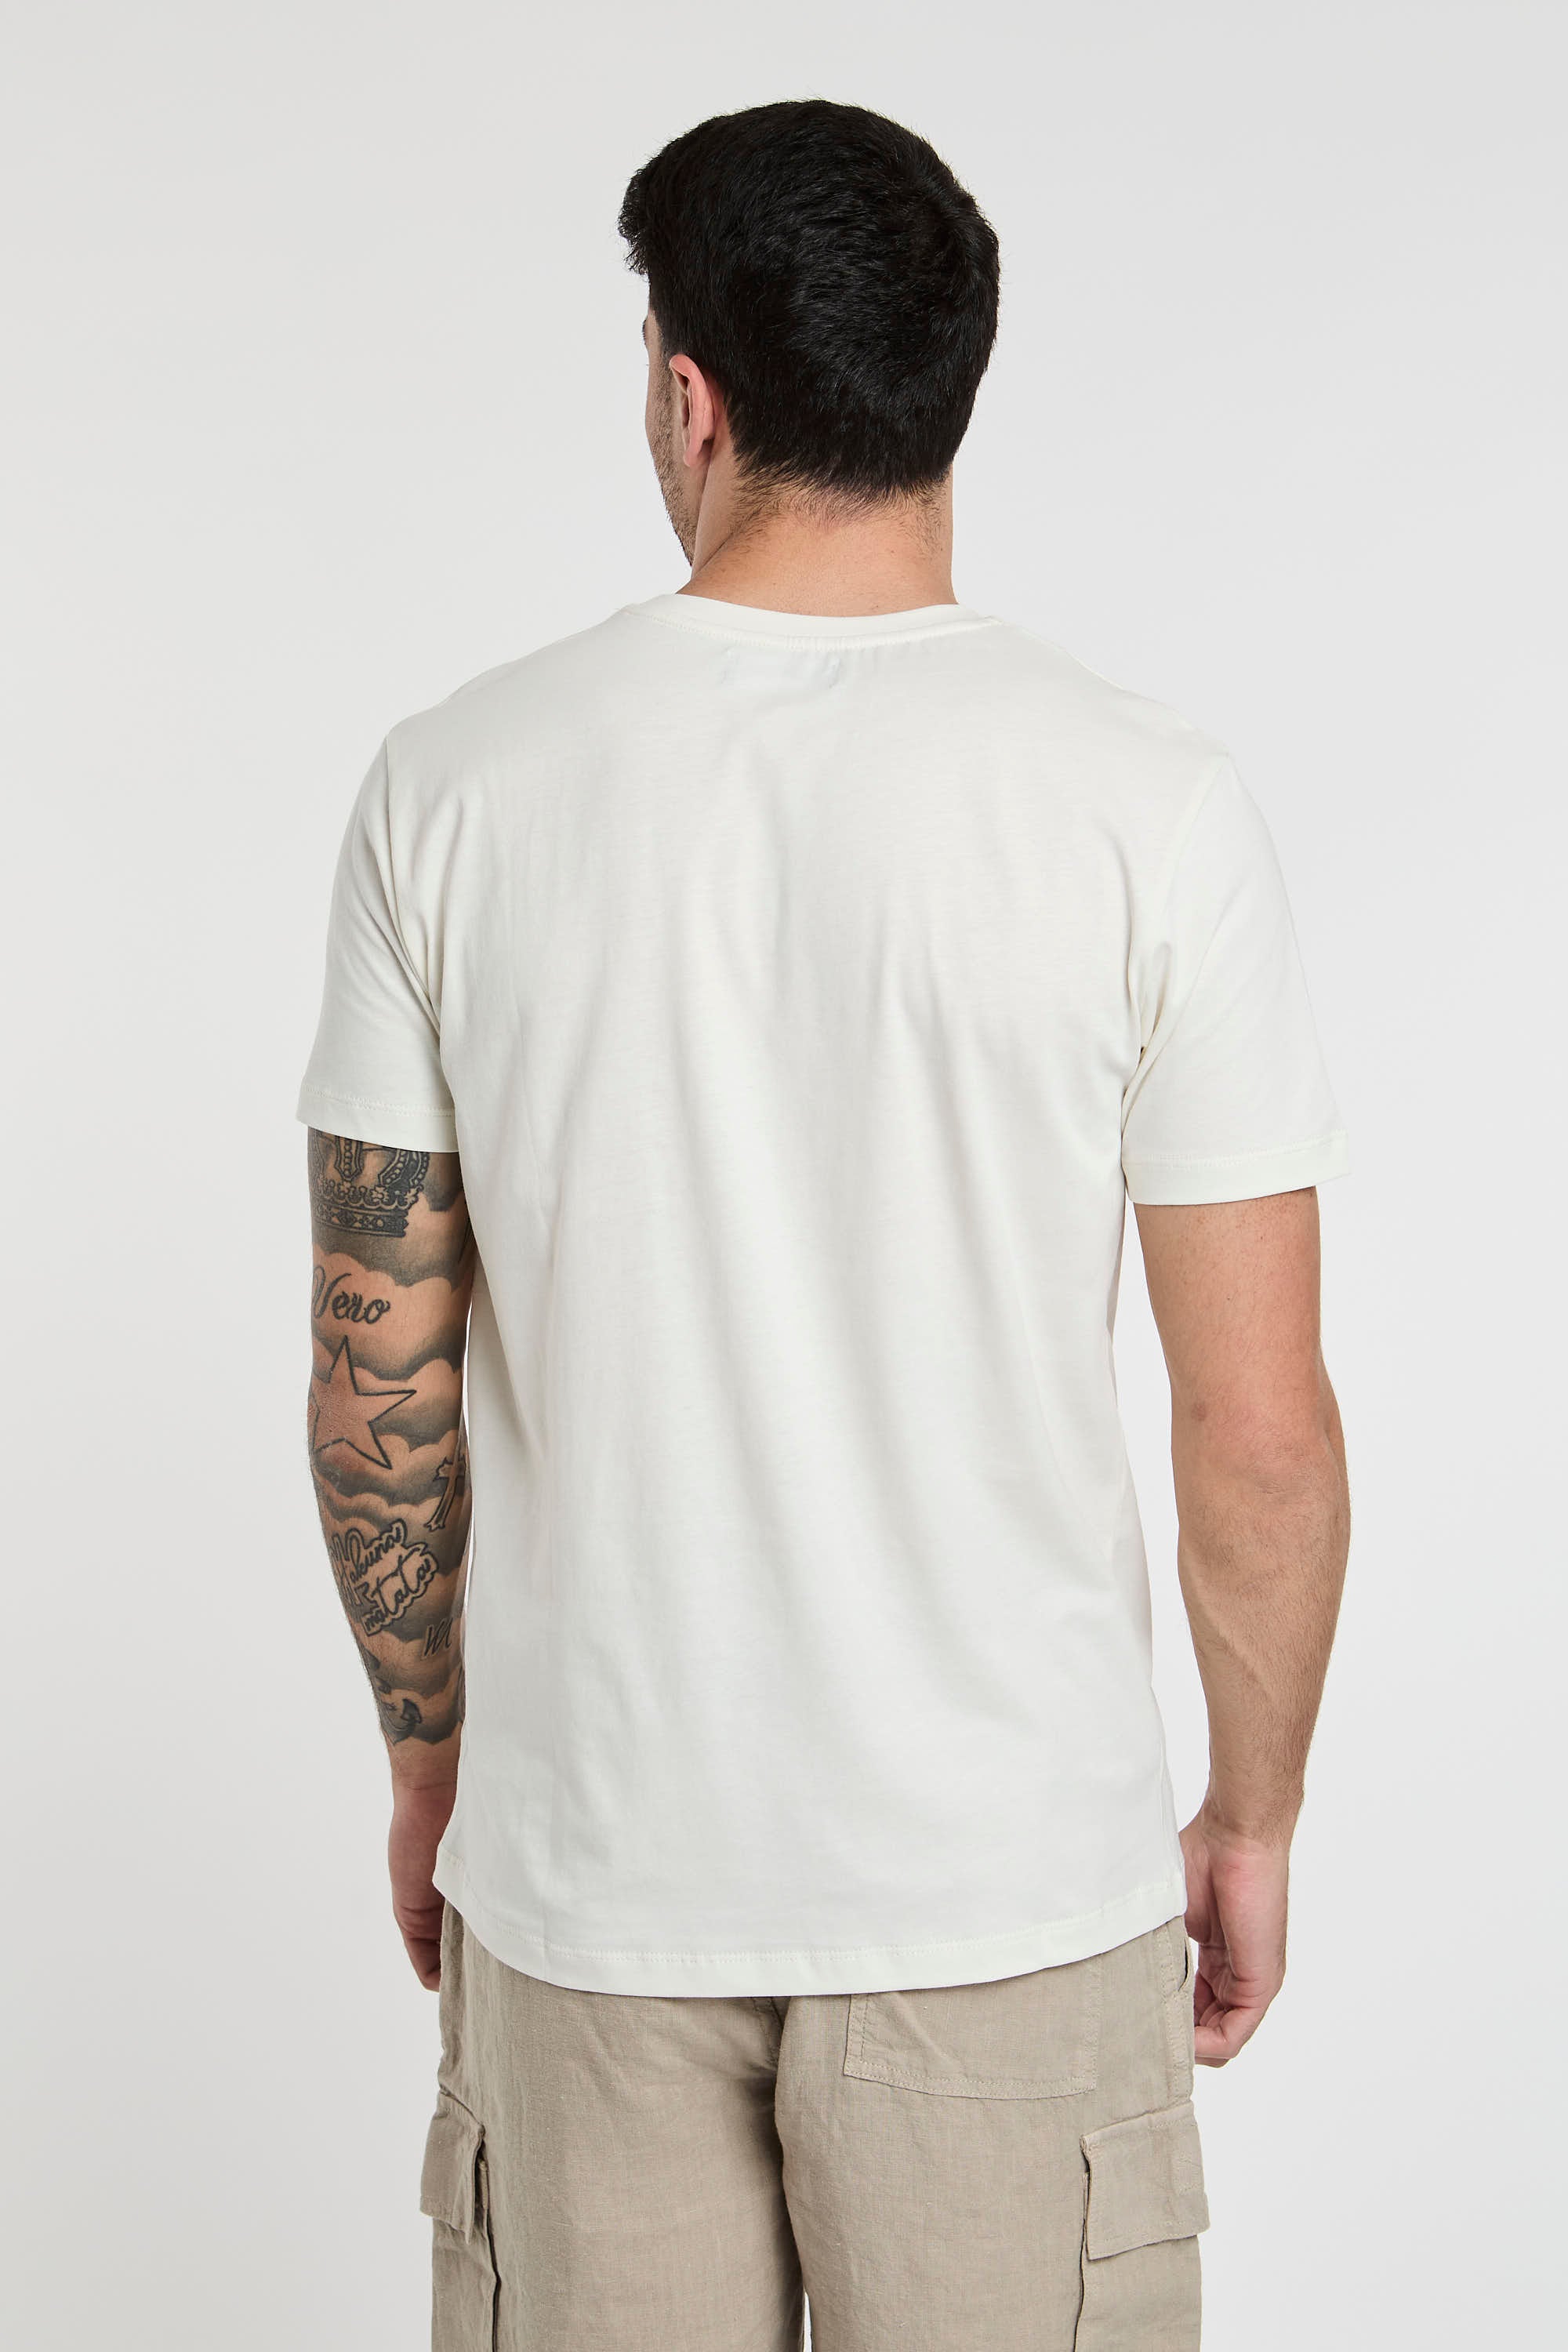 Vilebrequin T-Shirt Cotton White Print-6